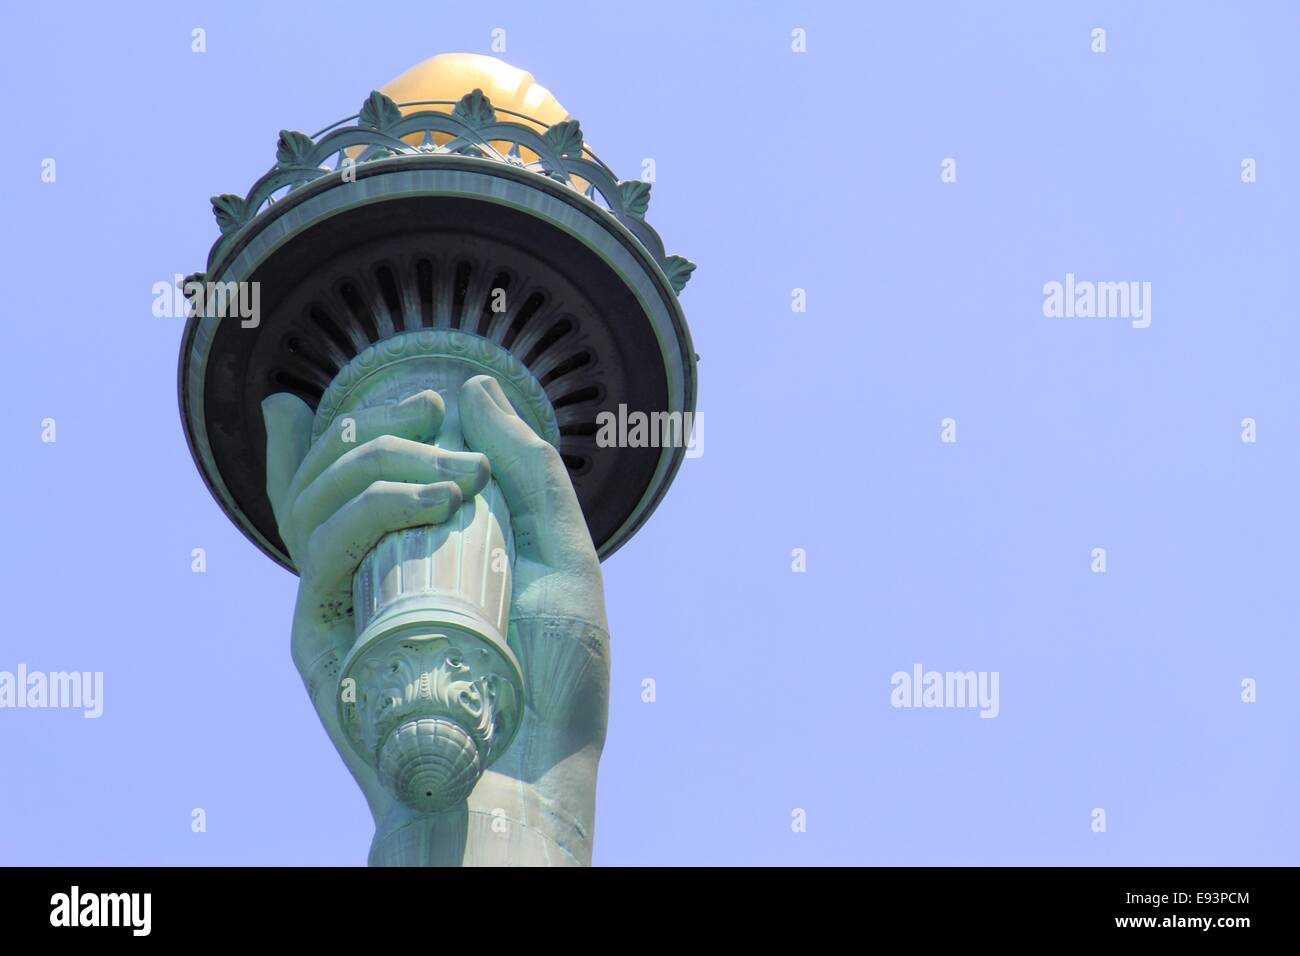 Vue rapprochée de la torche de la statue de la liberté, New York City, USA Banque D'Images